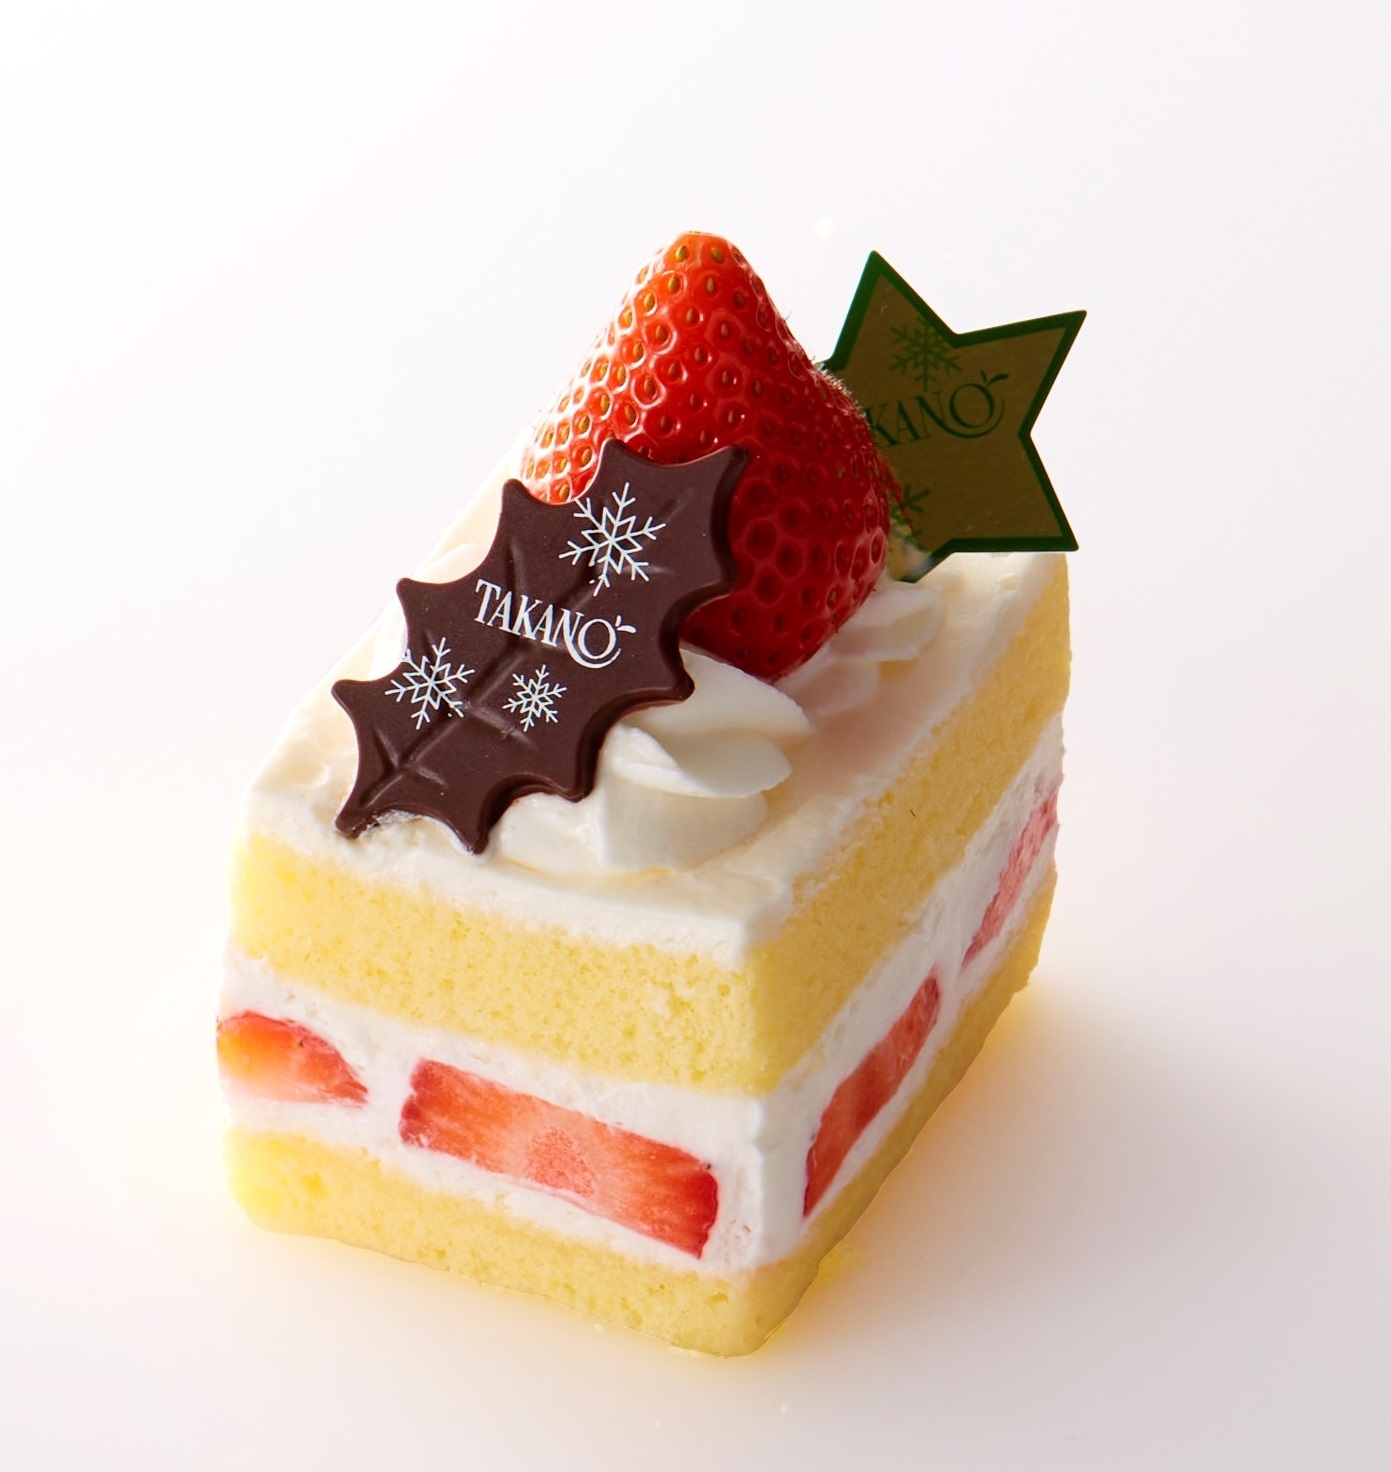 予約不要で当日購入可能なケーキをご紹介 クリスマスを彩る 渋谷 東急フードショーの ショートケーキ 6選 株式会社 東急百貨店のプレスリリース